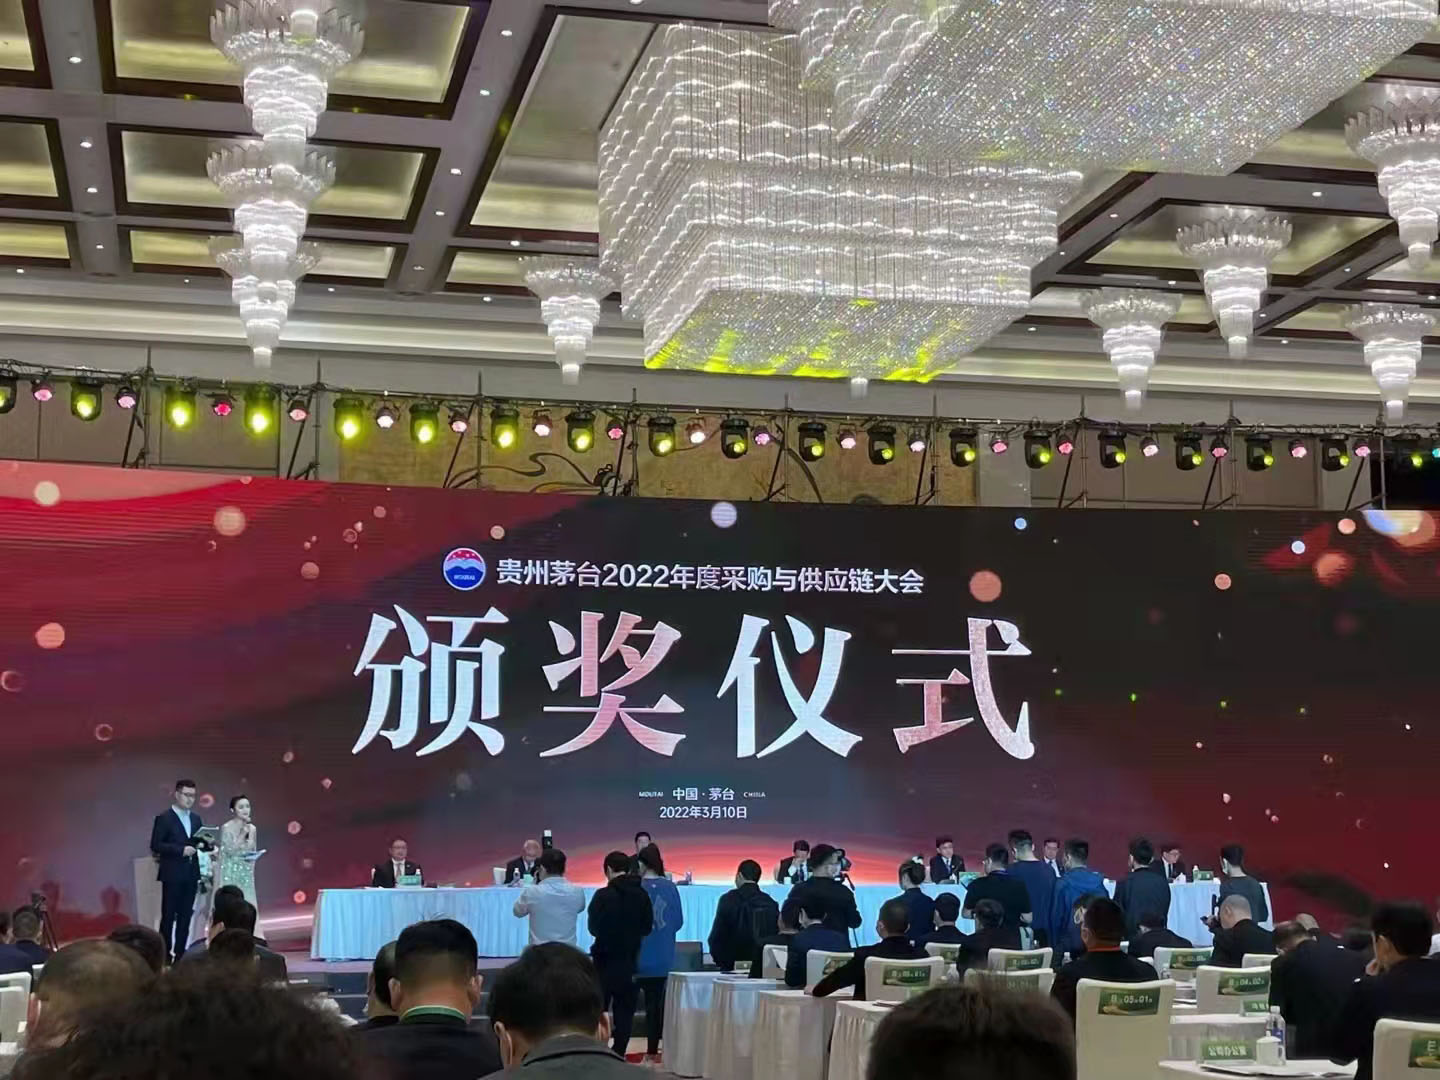 Guizhou Moutai 2021 Excellent Supply Partner